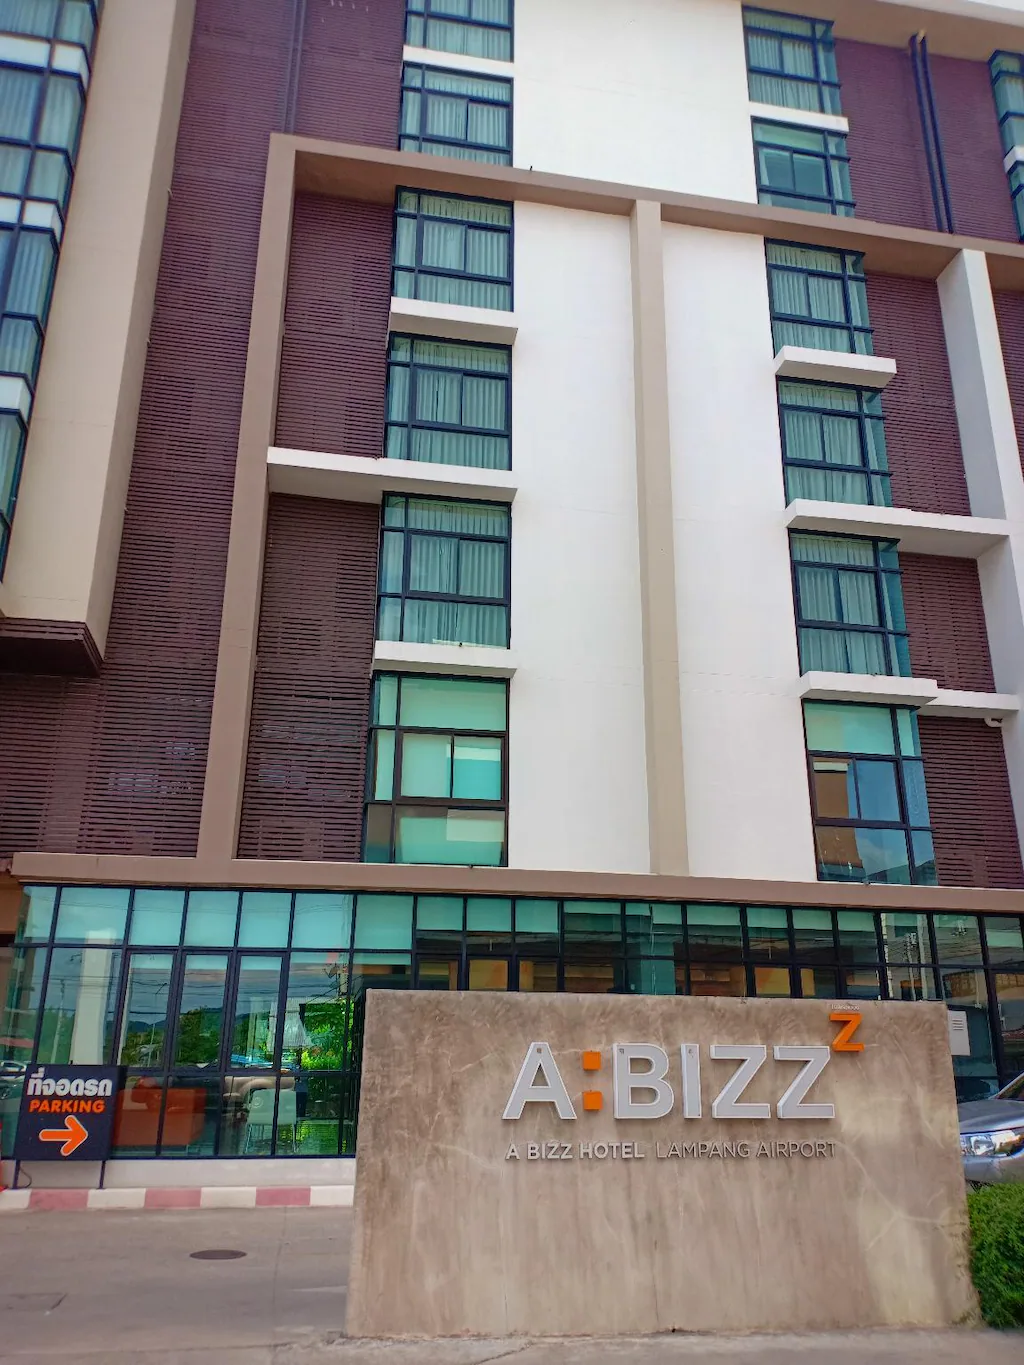 โรงแรมเอบิช
(A BIZZ Hotel)